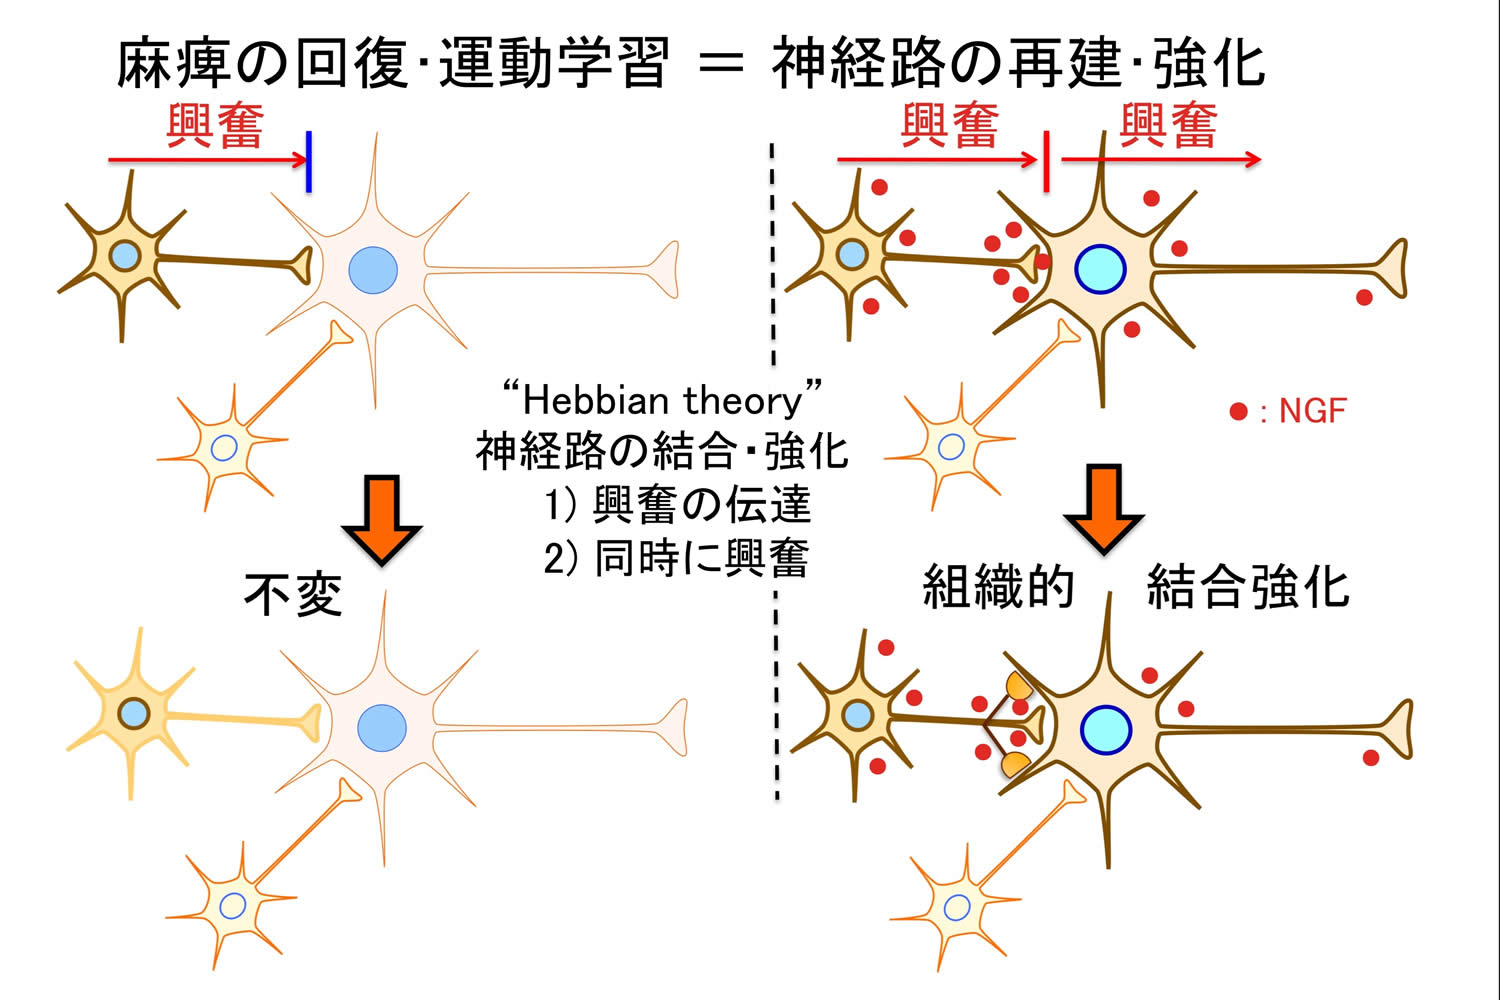 図2: 神経路と学習